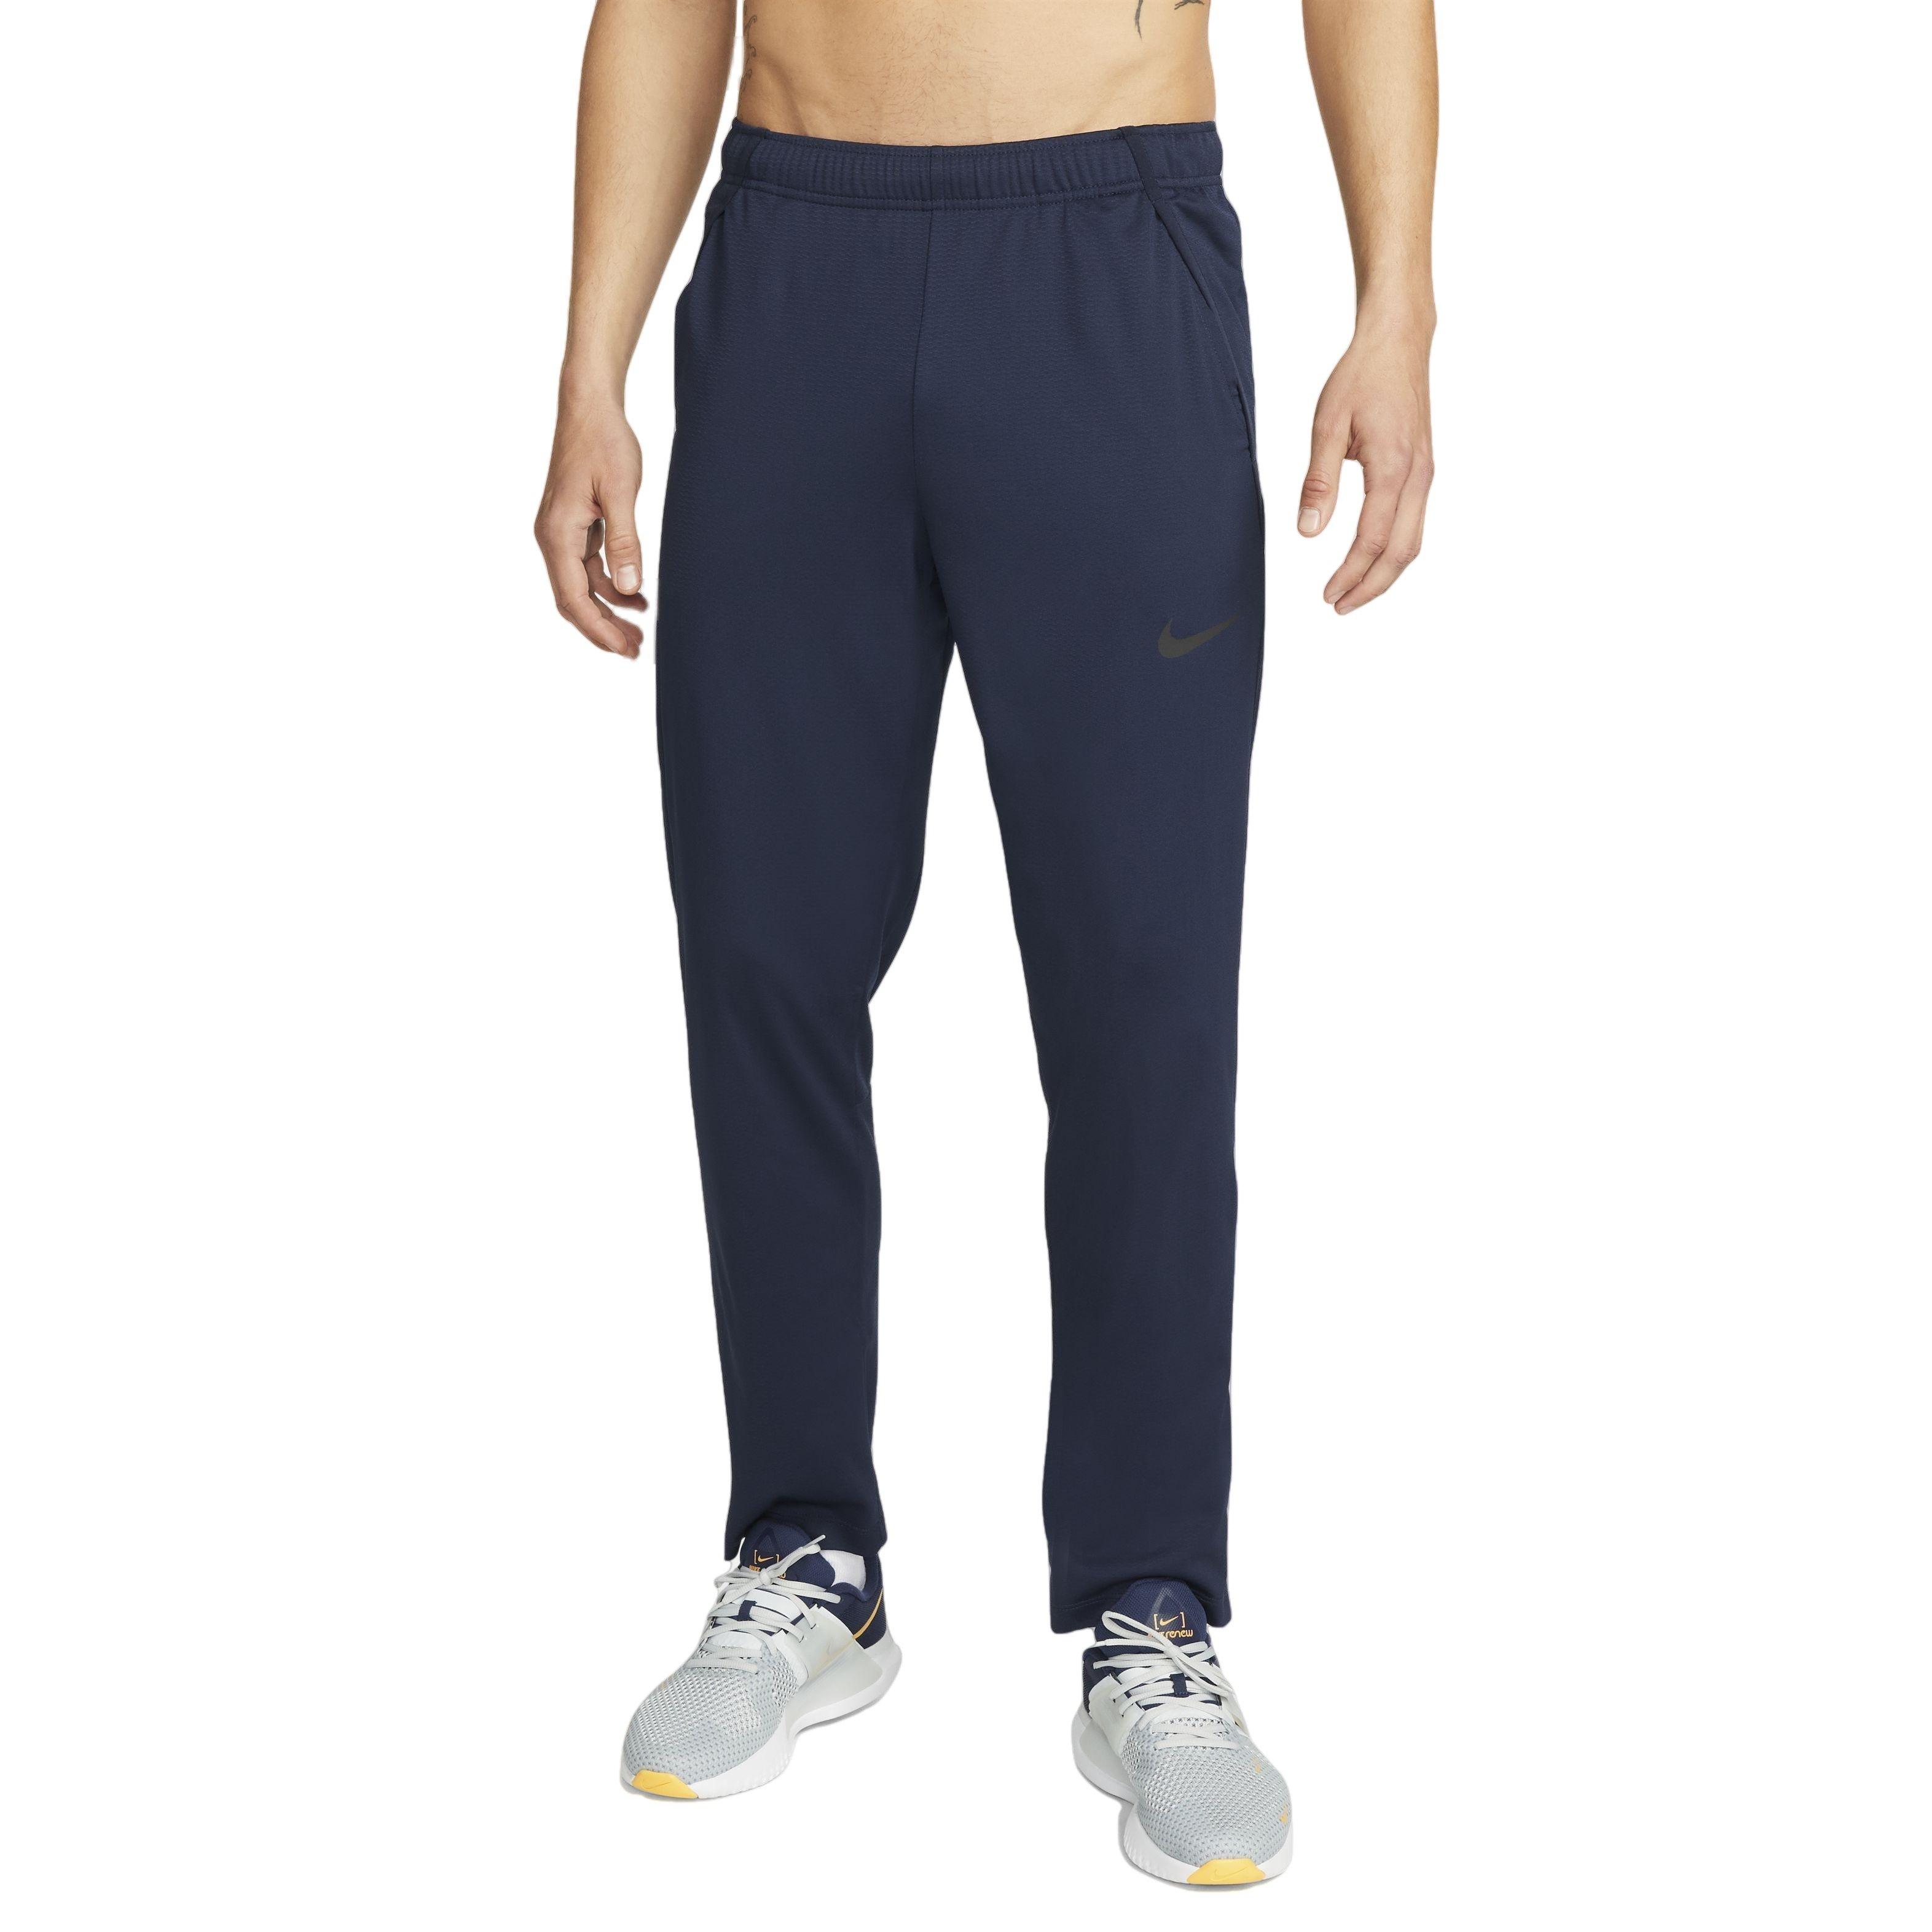 Nike Dri-FIT Epic Men's Knit Training Pants, Navy